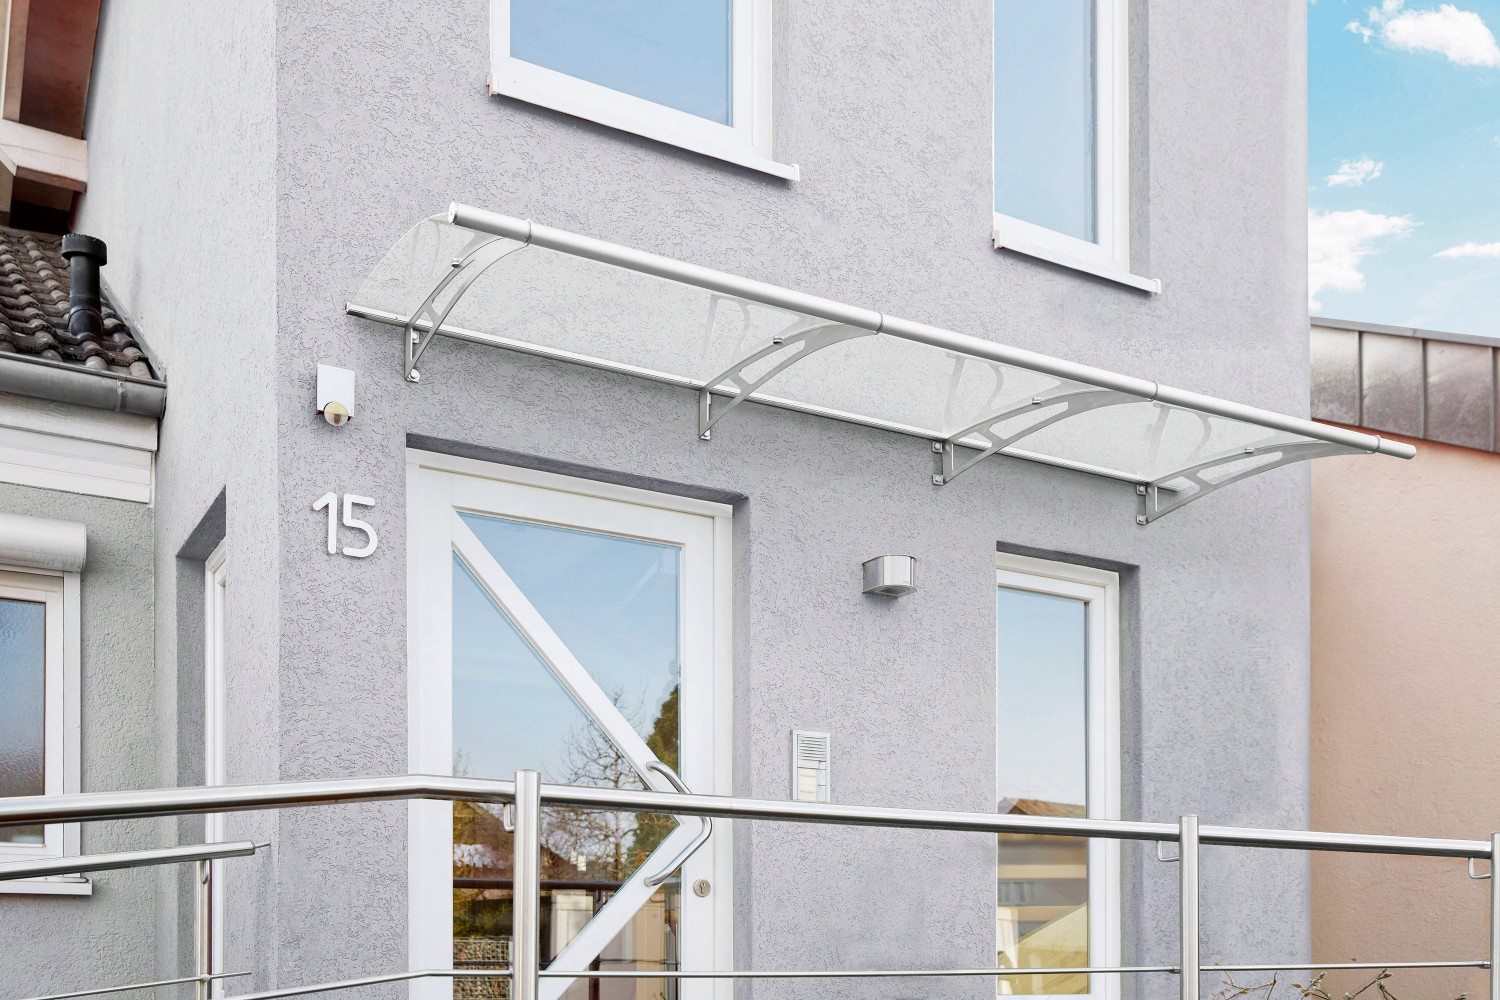 Rund ums Haus Witterungsbeständige Design-Vordächer von Gutta schützen vor Wind und Wetter - News, Bild 1